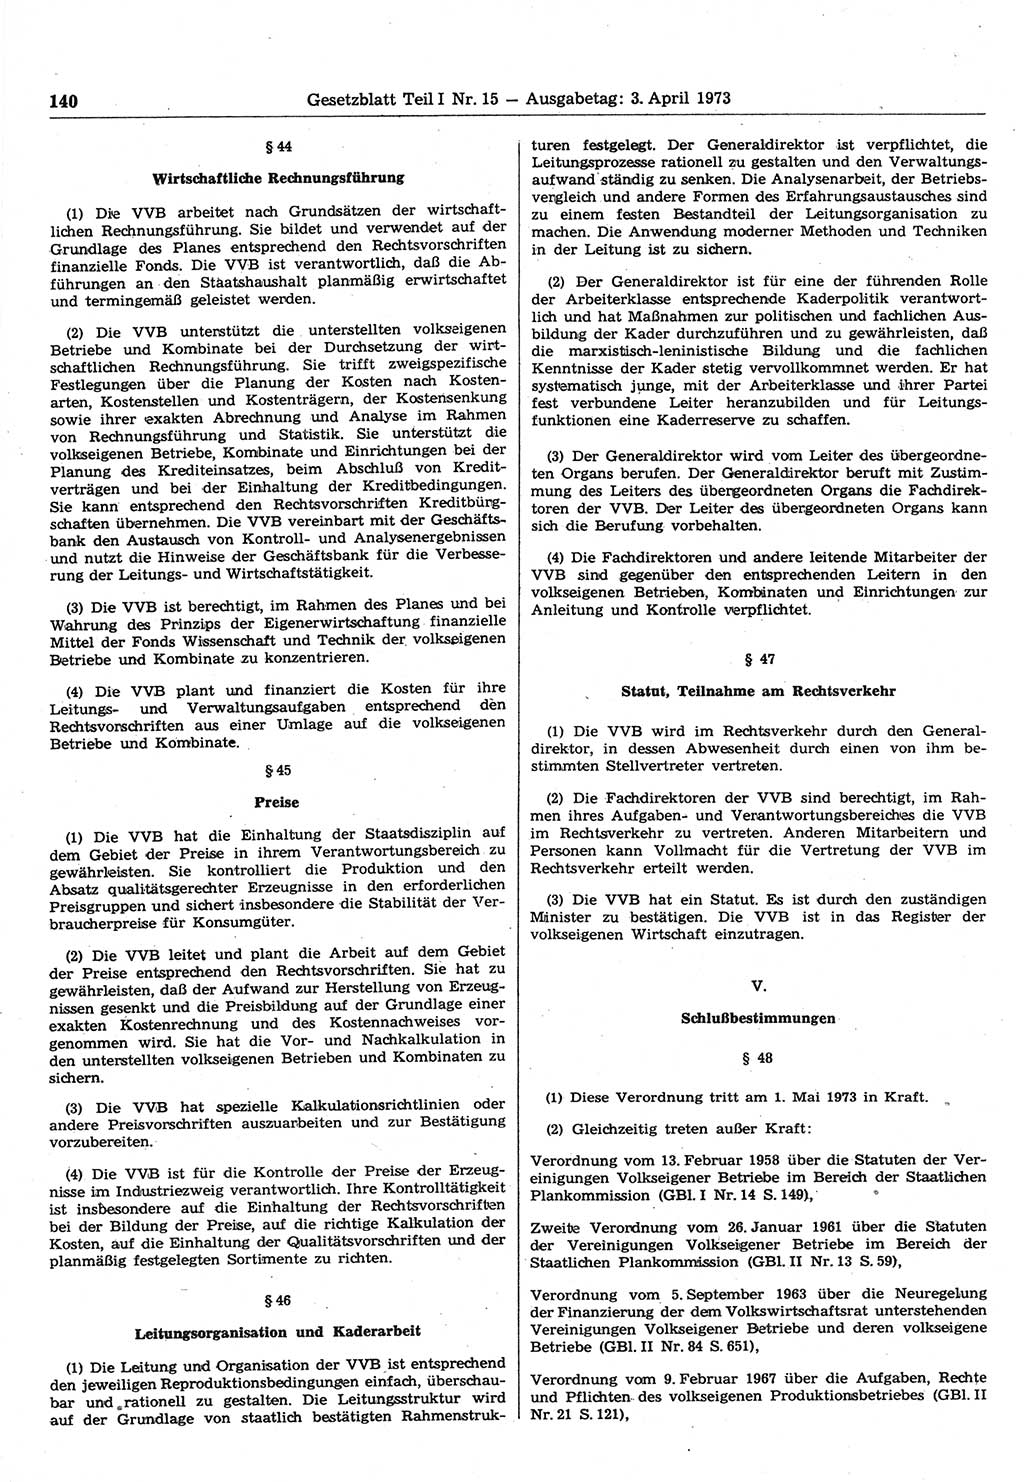 Gesetzblatt (GBl.) der Deutschen Demokratischen Republik (DDR) Teil Ⅰ 1973, Seite 140 (GBl. DDR Ⅰ 1973, S. 140)